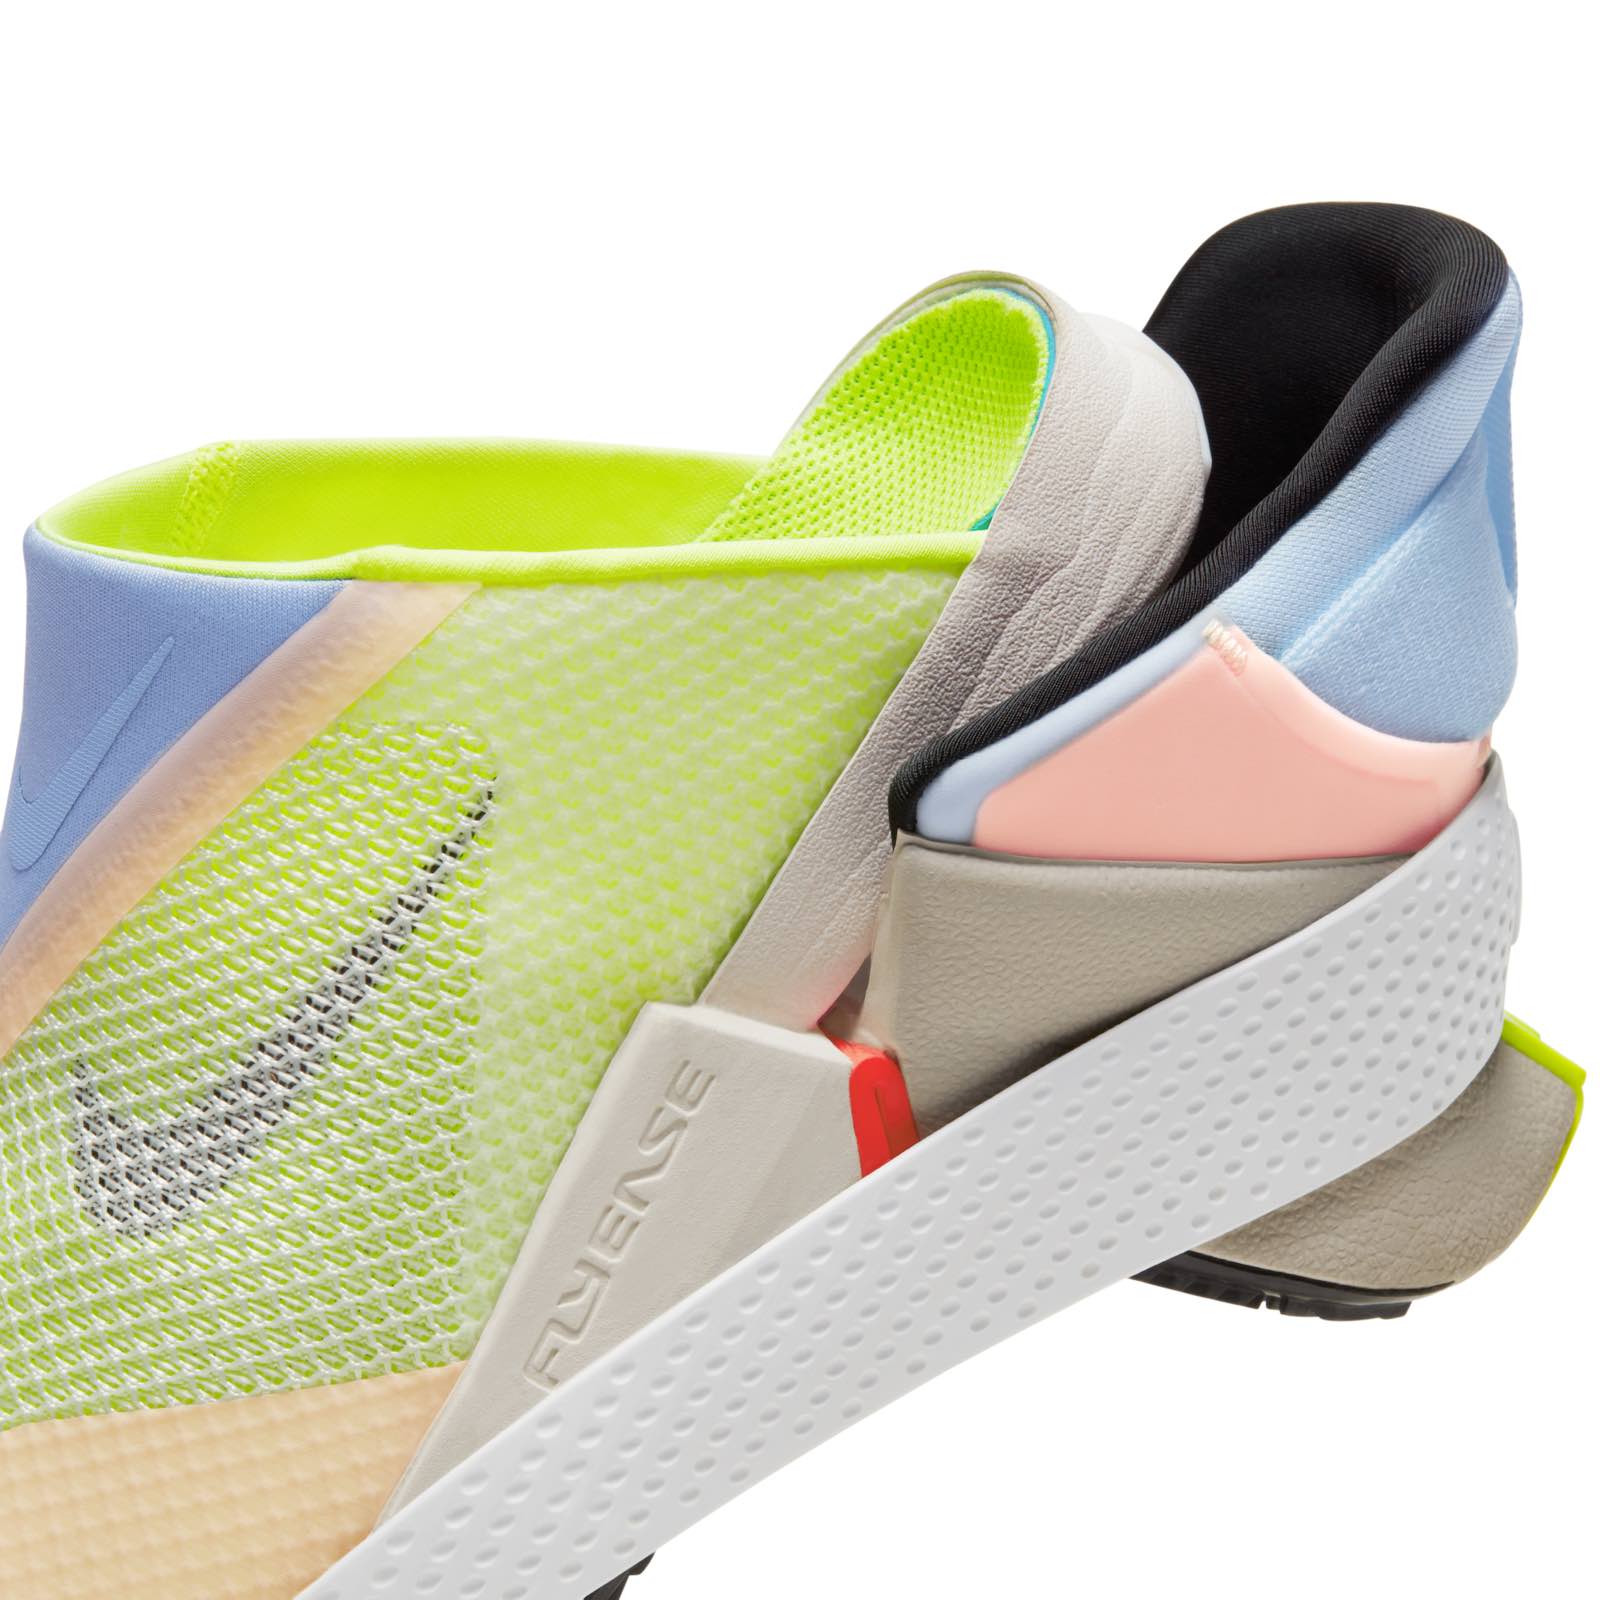 Nike FlyEase: suela flexible para crear Crocs estéticos | Digital Trends Español